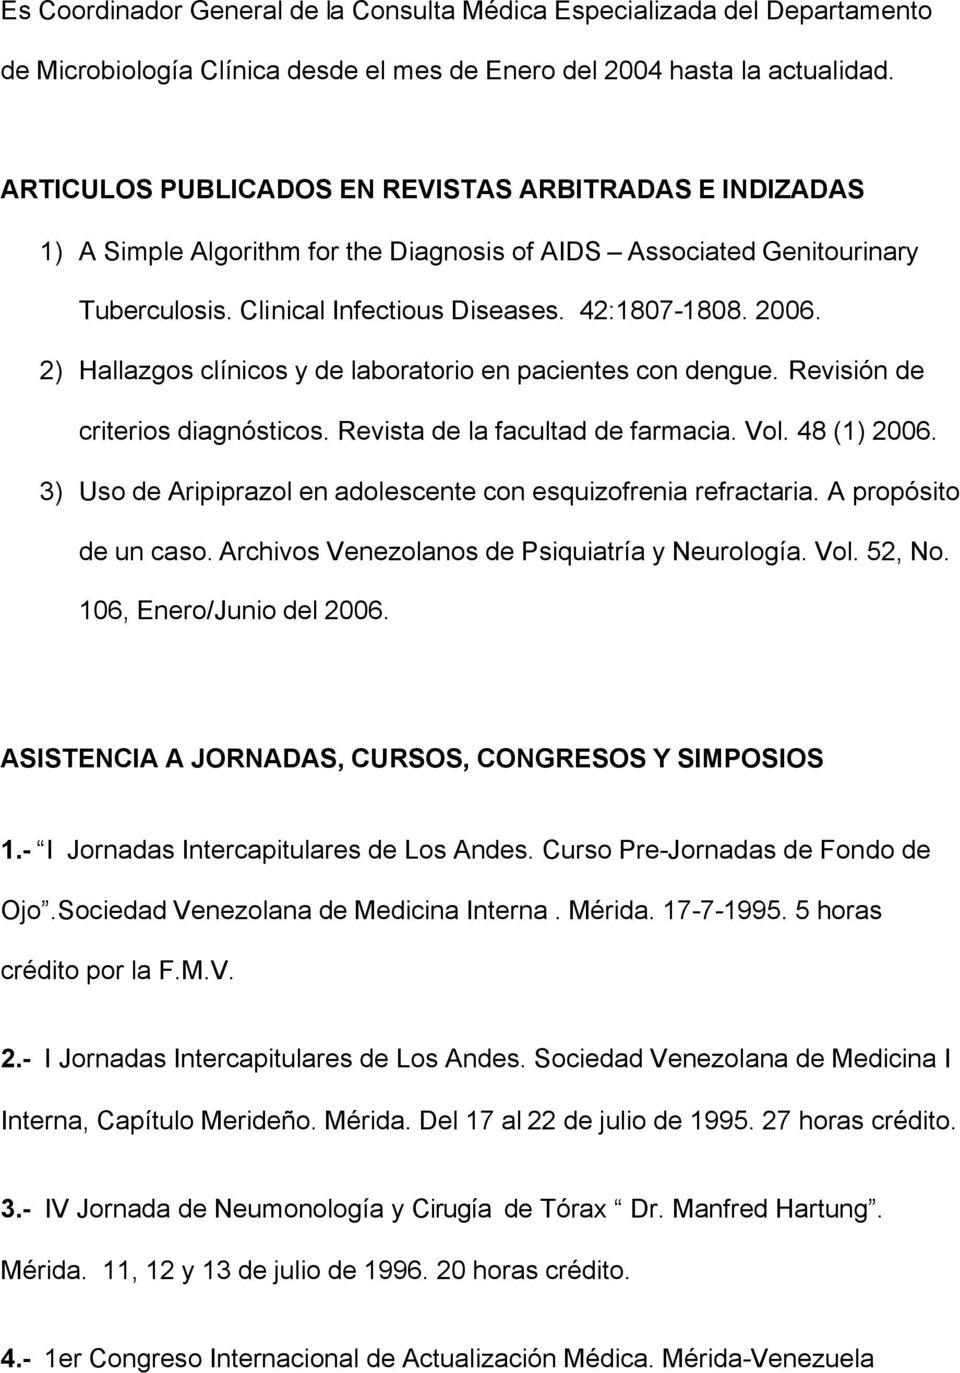 2) Hallazgos clínicos y de laboratorio en pacientes con dengue. Revisión de criterios diagnósticos. Revista de la facultad de farmacia. Vol. 48 (1) 2006.